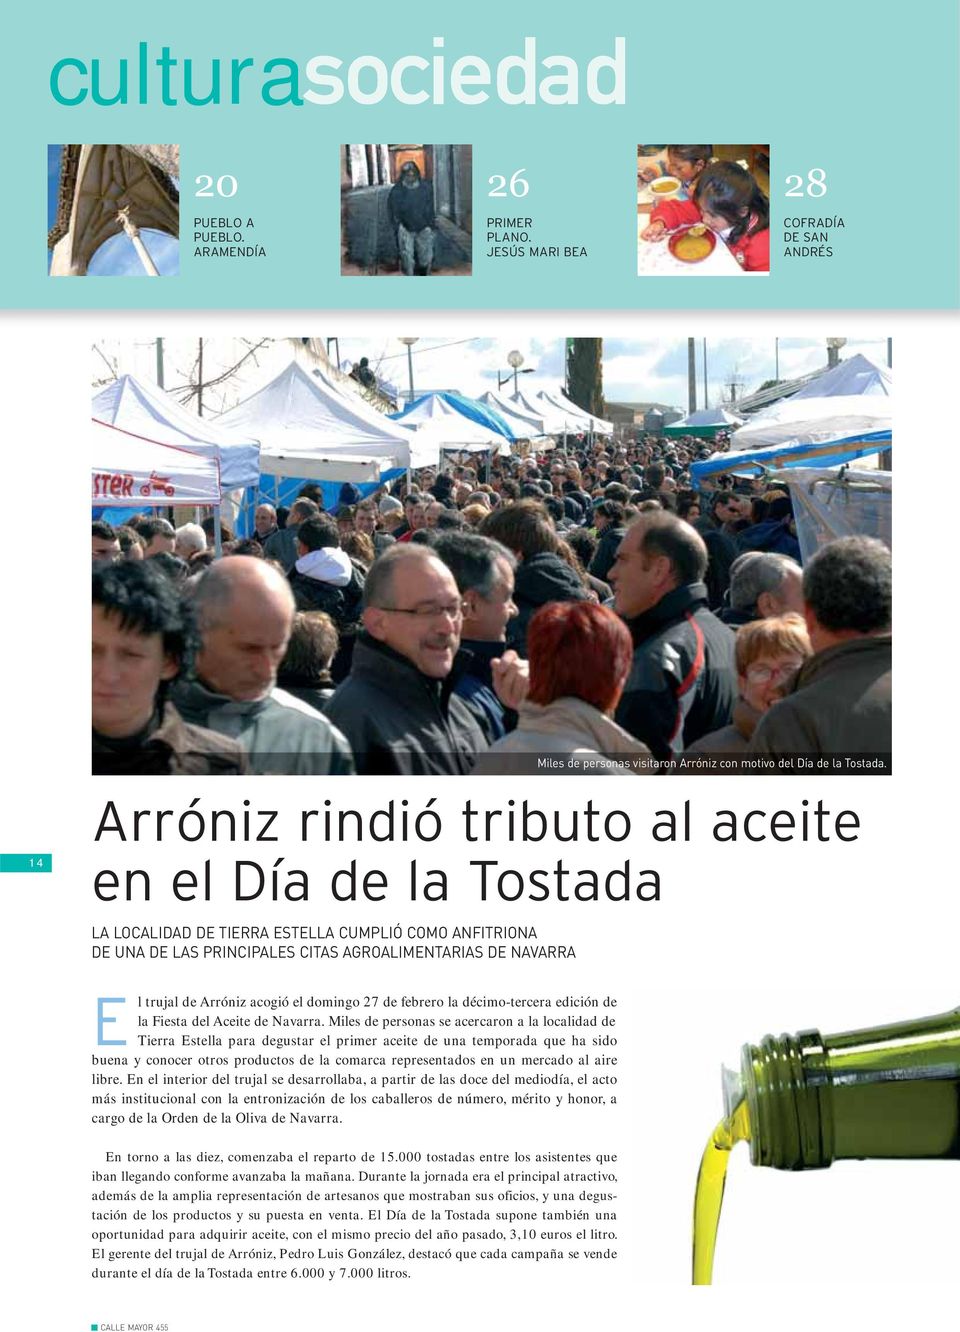 acogió el domingo 27 de febrero la décimo-tercera edición de la Fiesta del Aceite de Navarra.